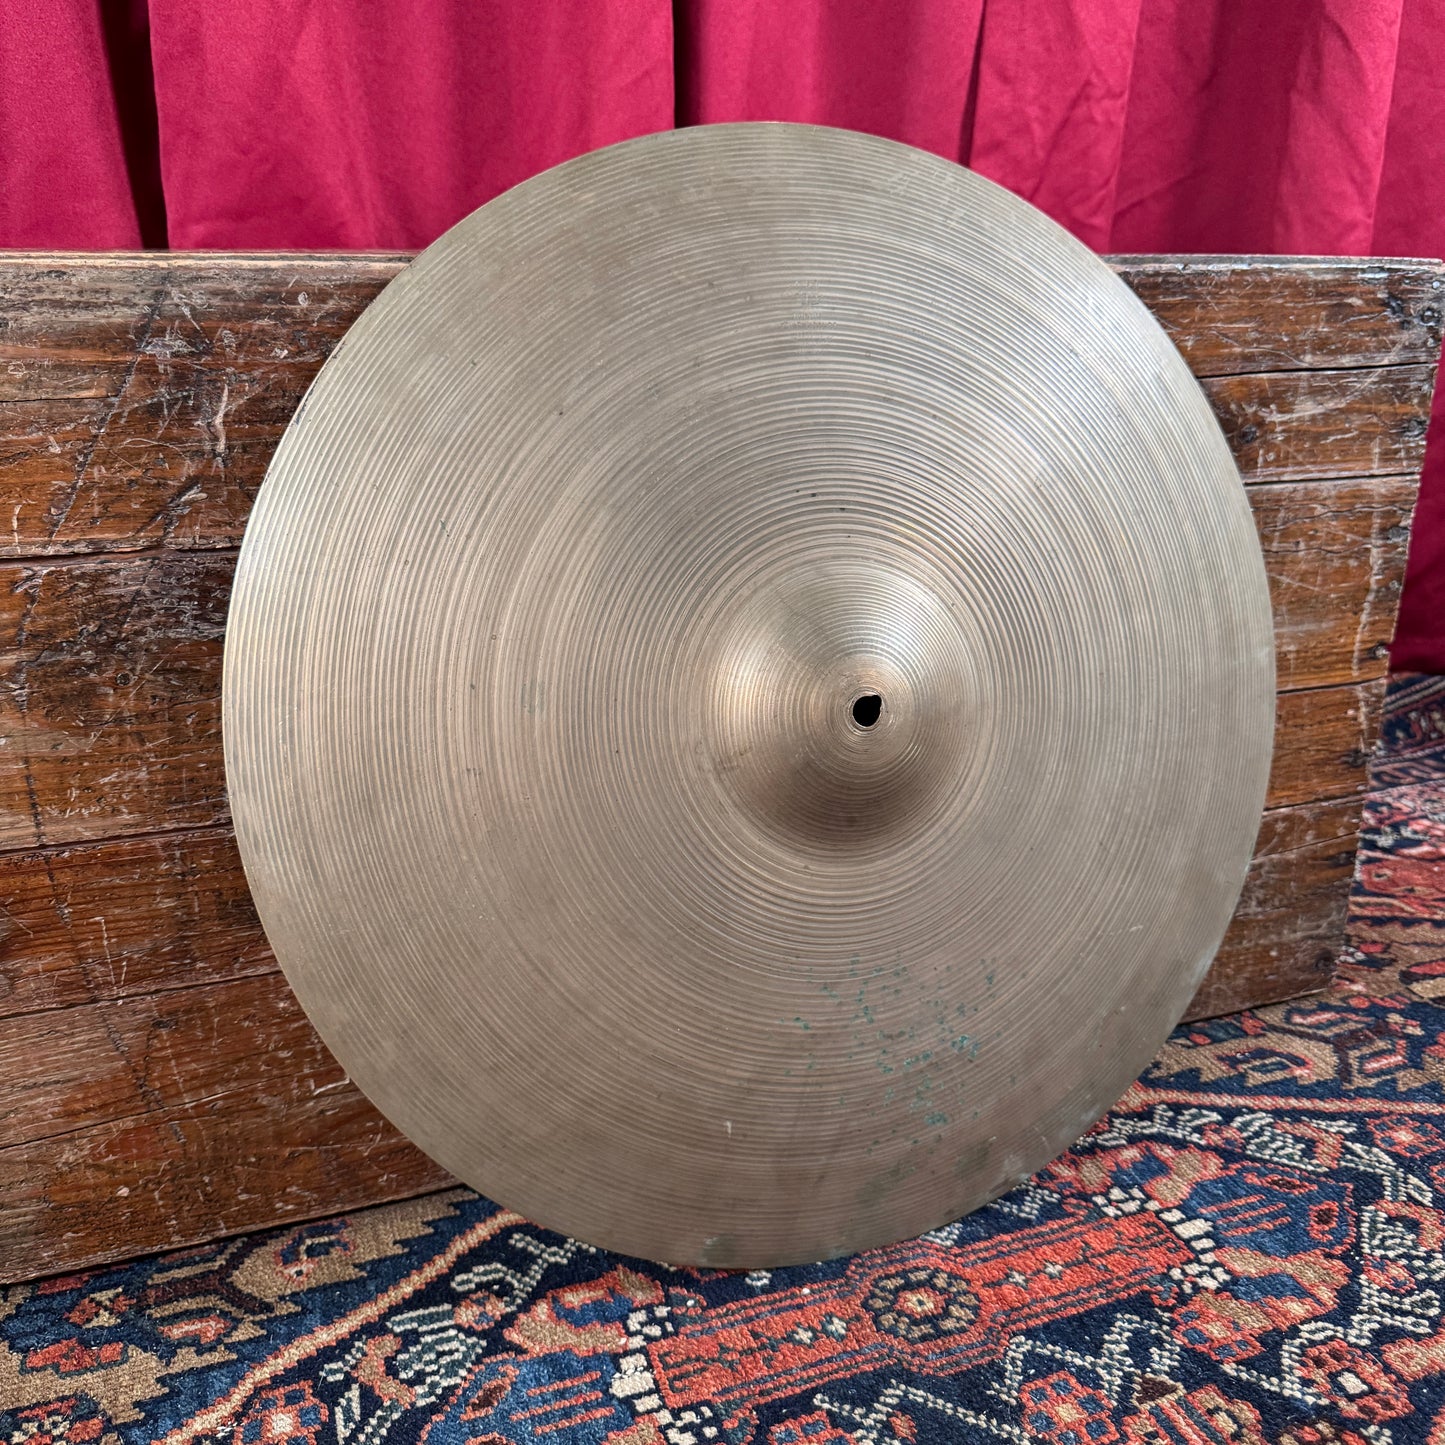 20" Zildjian A 1960s Ride Cymbal 2600g *Video Demo*